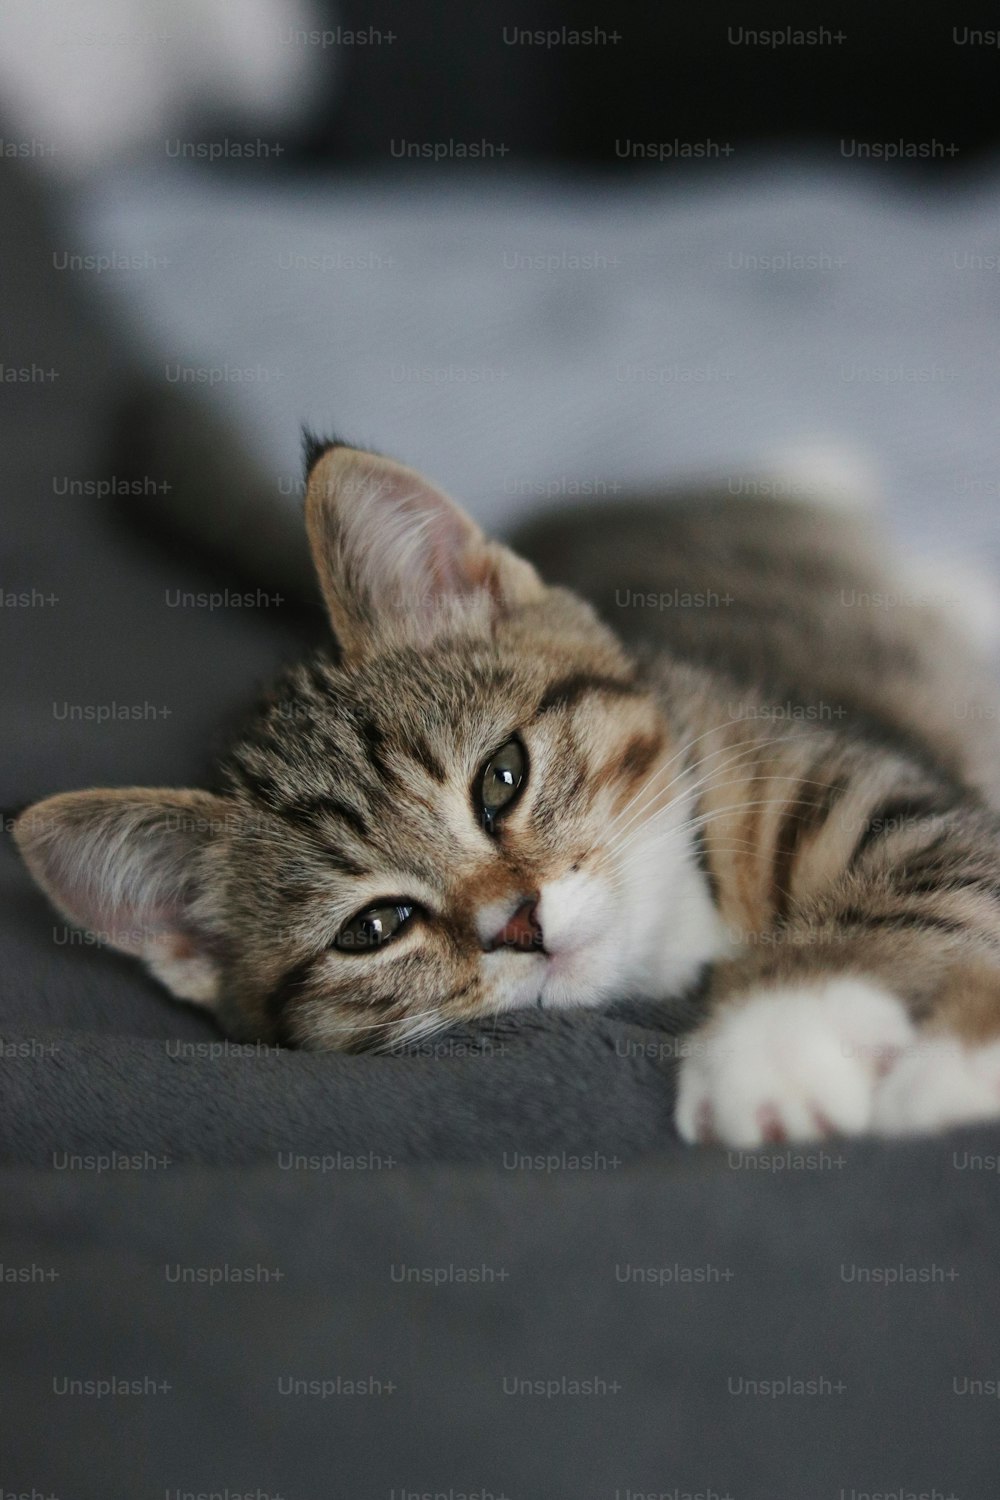 Un pequeño gatito acostado en una cama mirando a la cámara